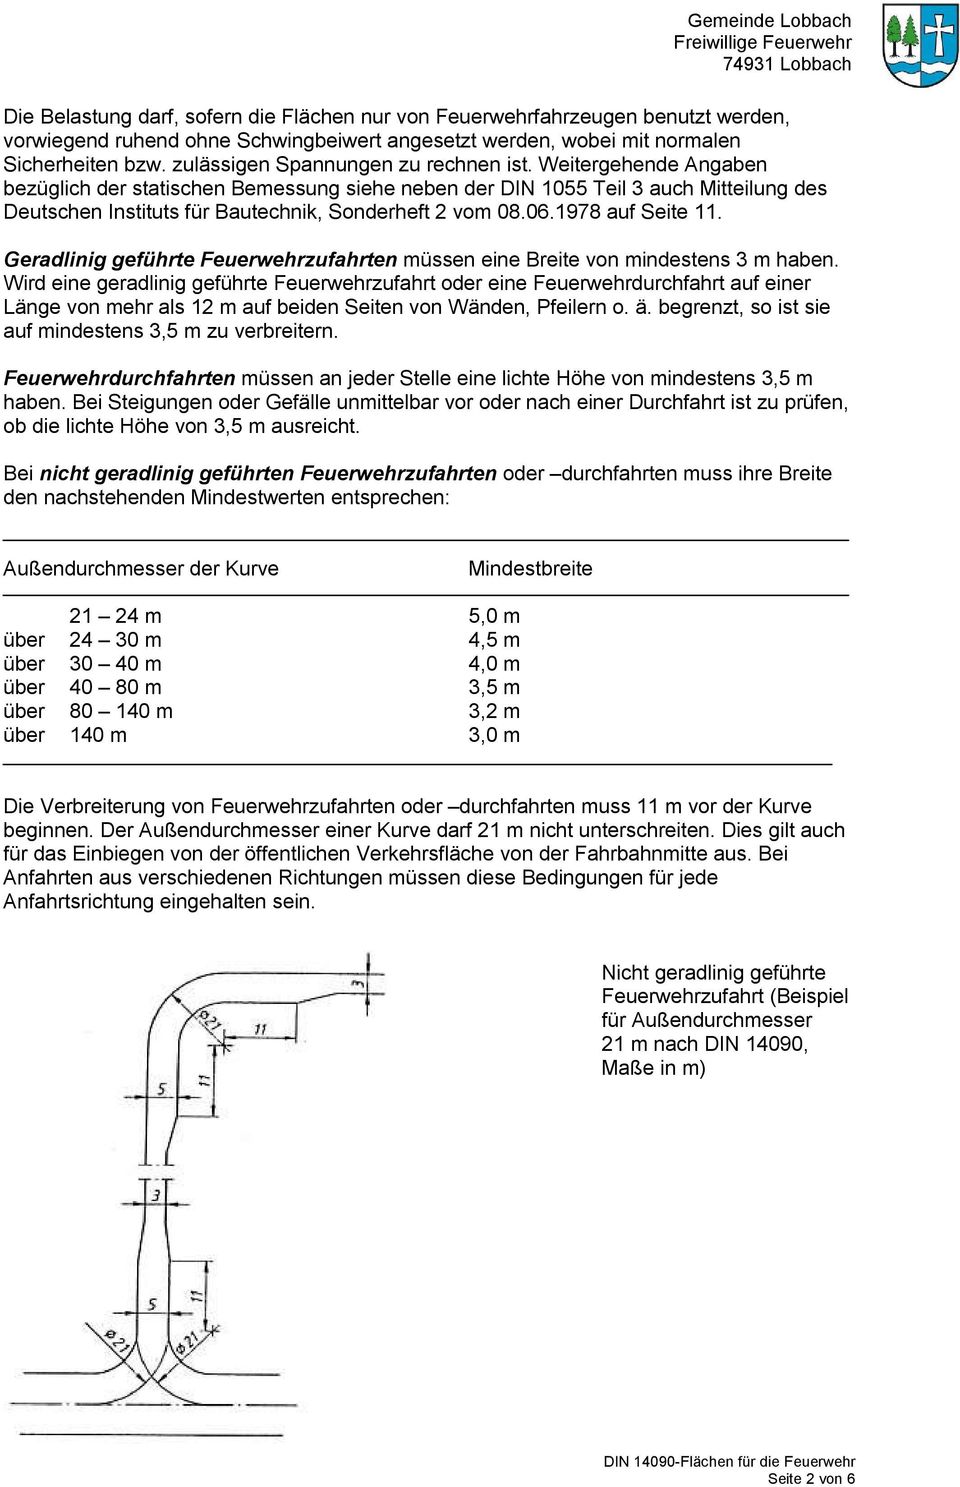 Weitergehende Angaben bezüglich der statischen Bemessung siehe neben der DIN 1055 Teil 3 auch Mitteilung des Deutschen Instituts für Bautechnik, Sonderheft 2 vom 08.06.1978 auf Seite 11.